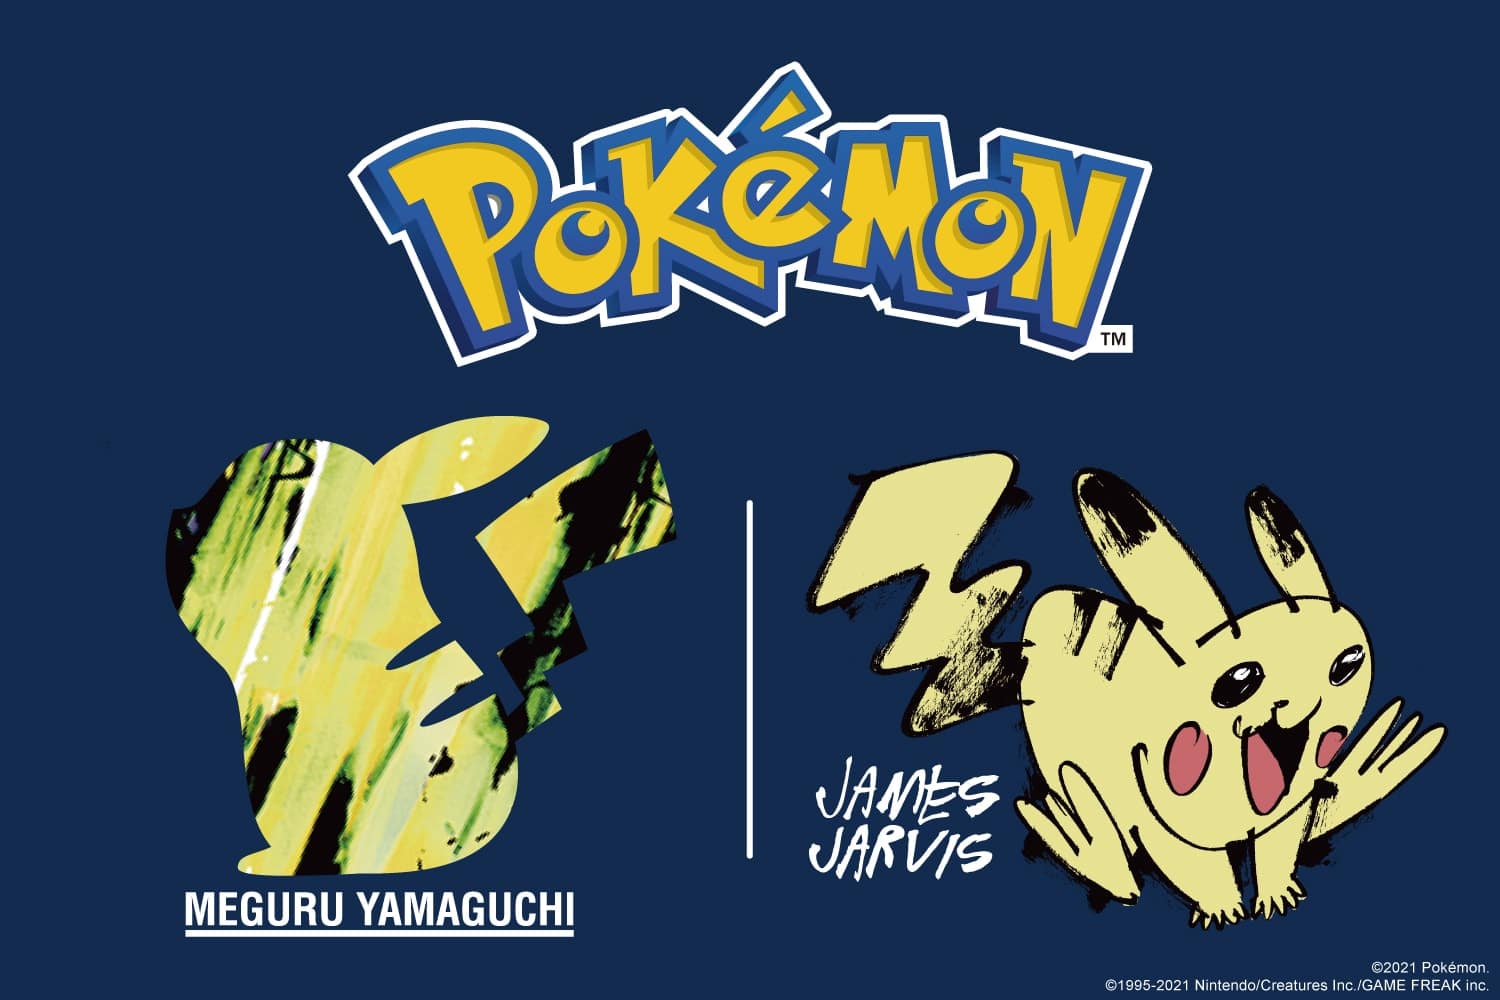 คอลเลกชันเสื้อ UT ลาย Pokémon พร้อมวางขาย 27 สิงหาคมนี้ โดย 2 ศิลปิน เมงุรุ ยามางูจิ และเจมส์ จาร์วิส 1